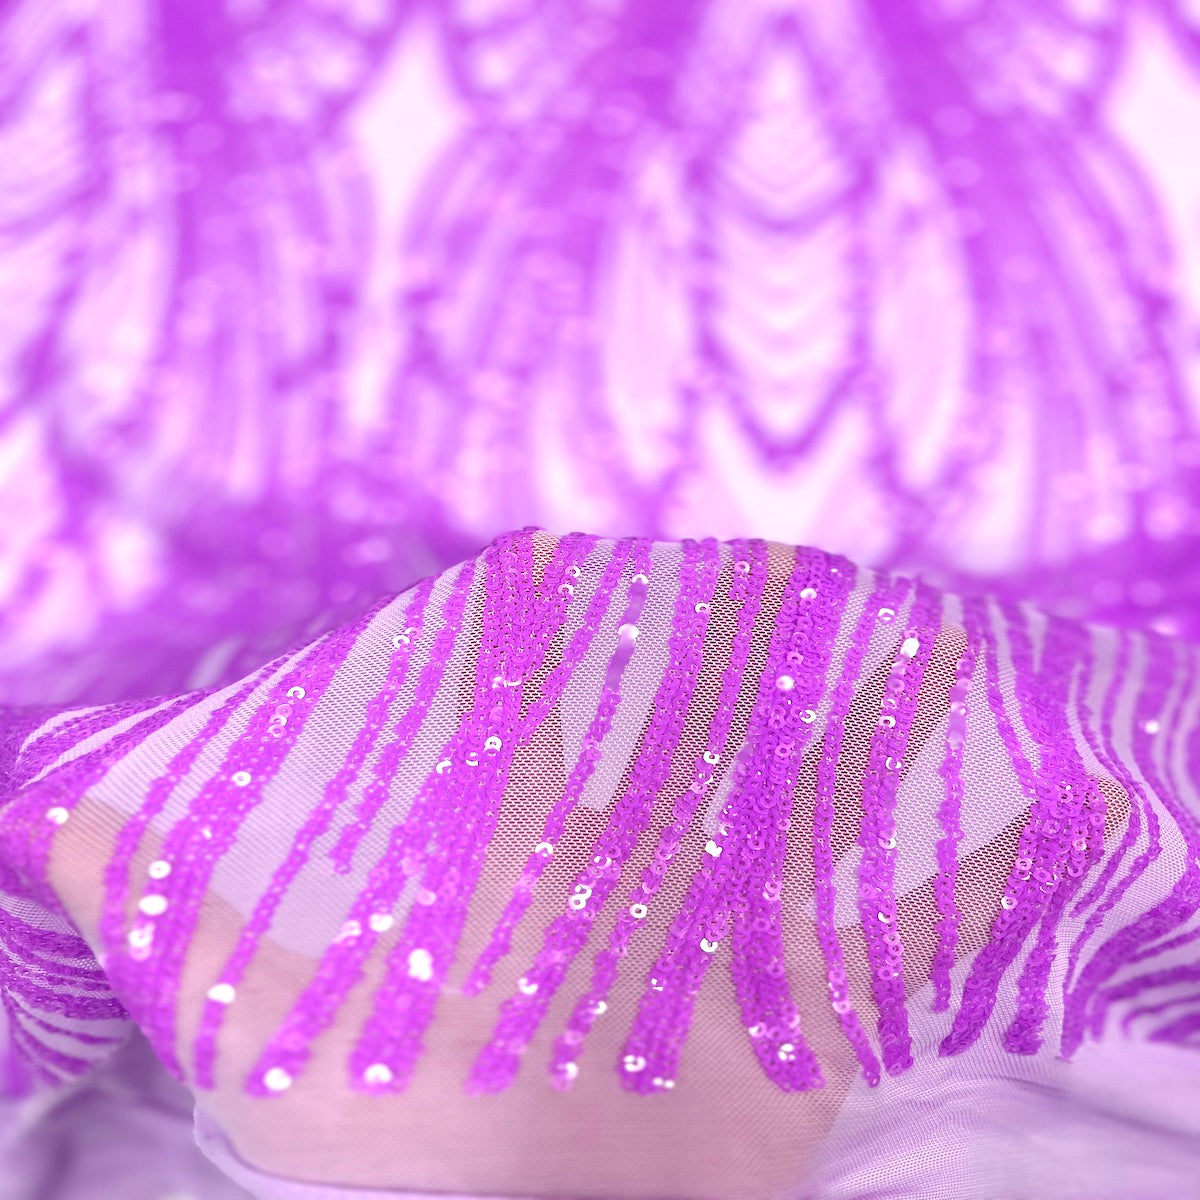 Tela de encaje de lentejuelas elásticas Selena Wave lavanda 